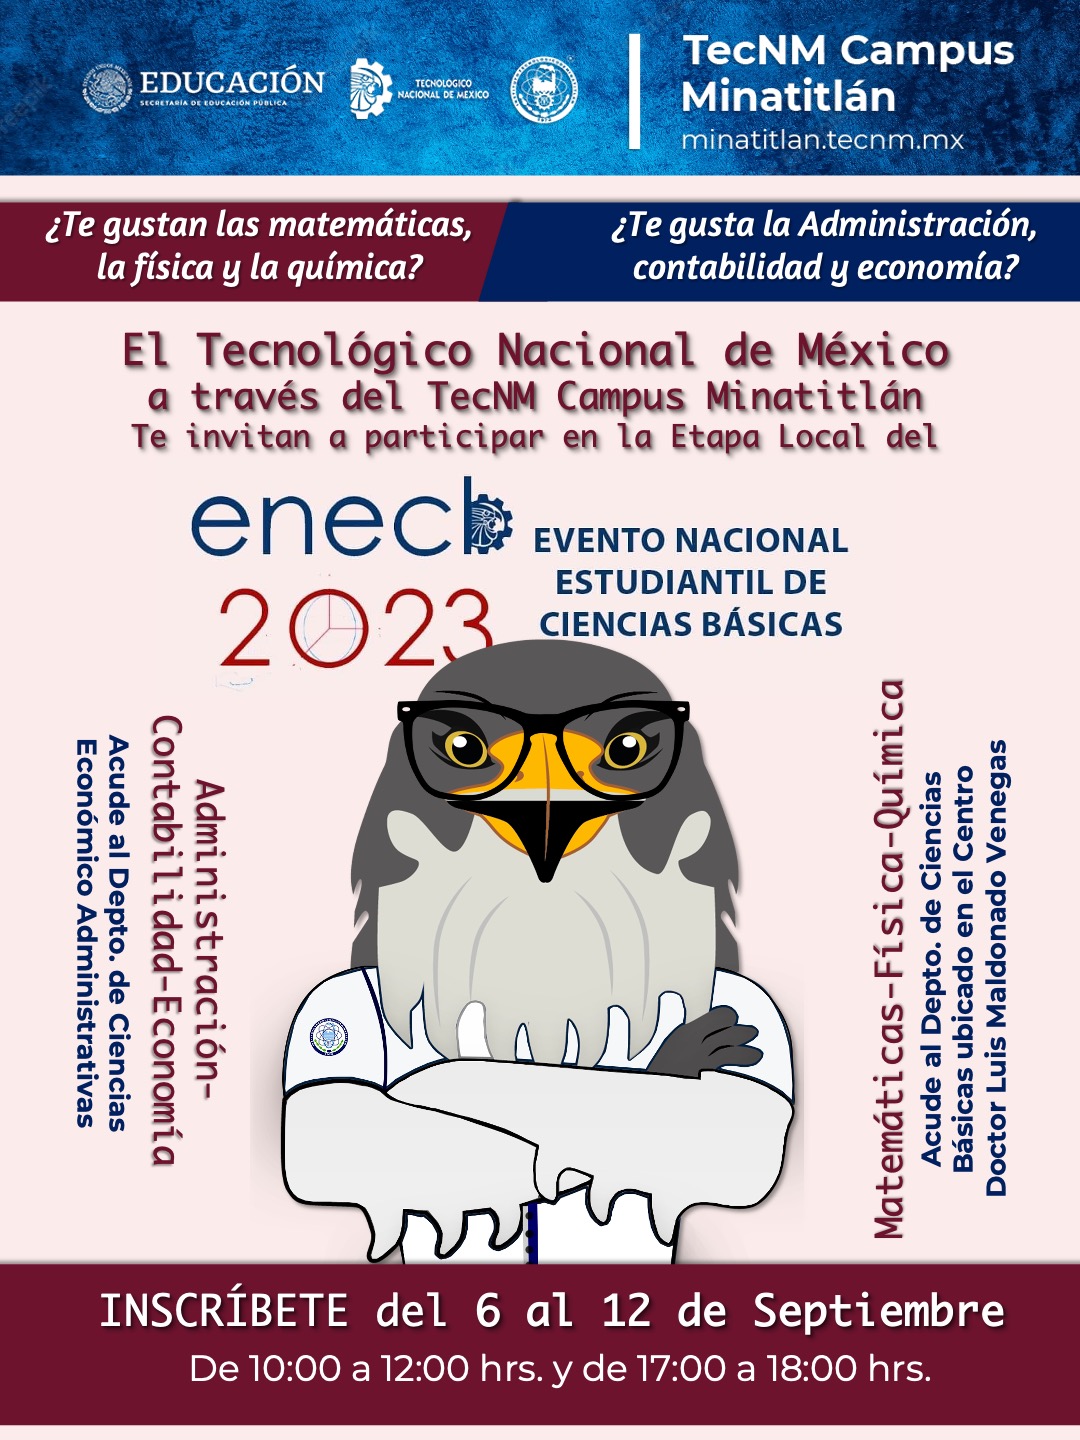 ¡PARTICIPA EN LA ETAPA LOCAL DEL ENCB 2023!